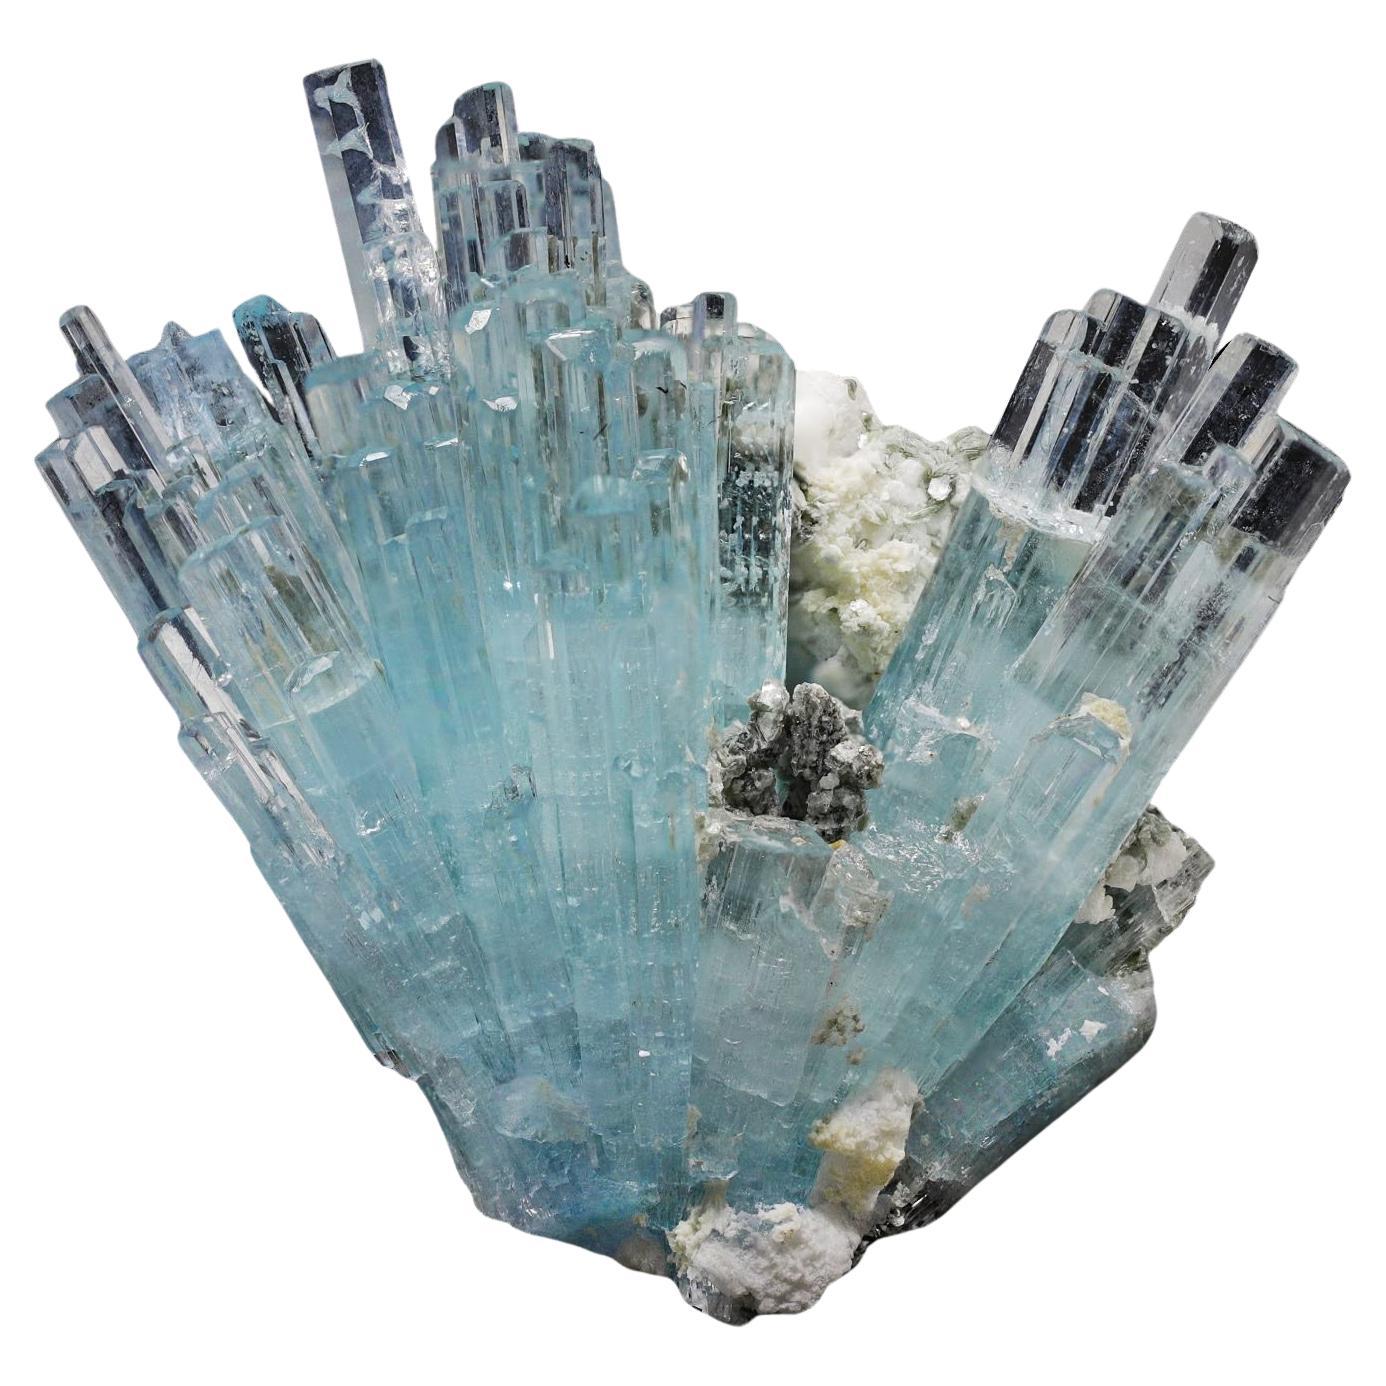 Cluster de cristaux d'aigue-marine avec matrice de mousseline et d'albâtre du Pakistan